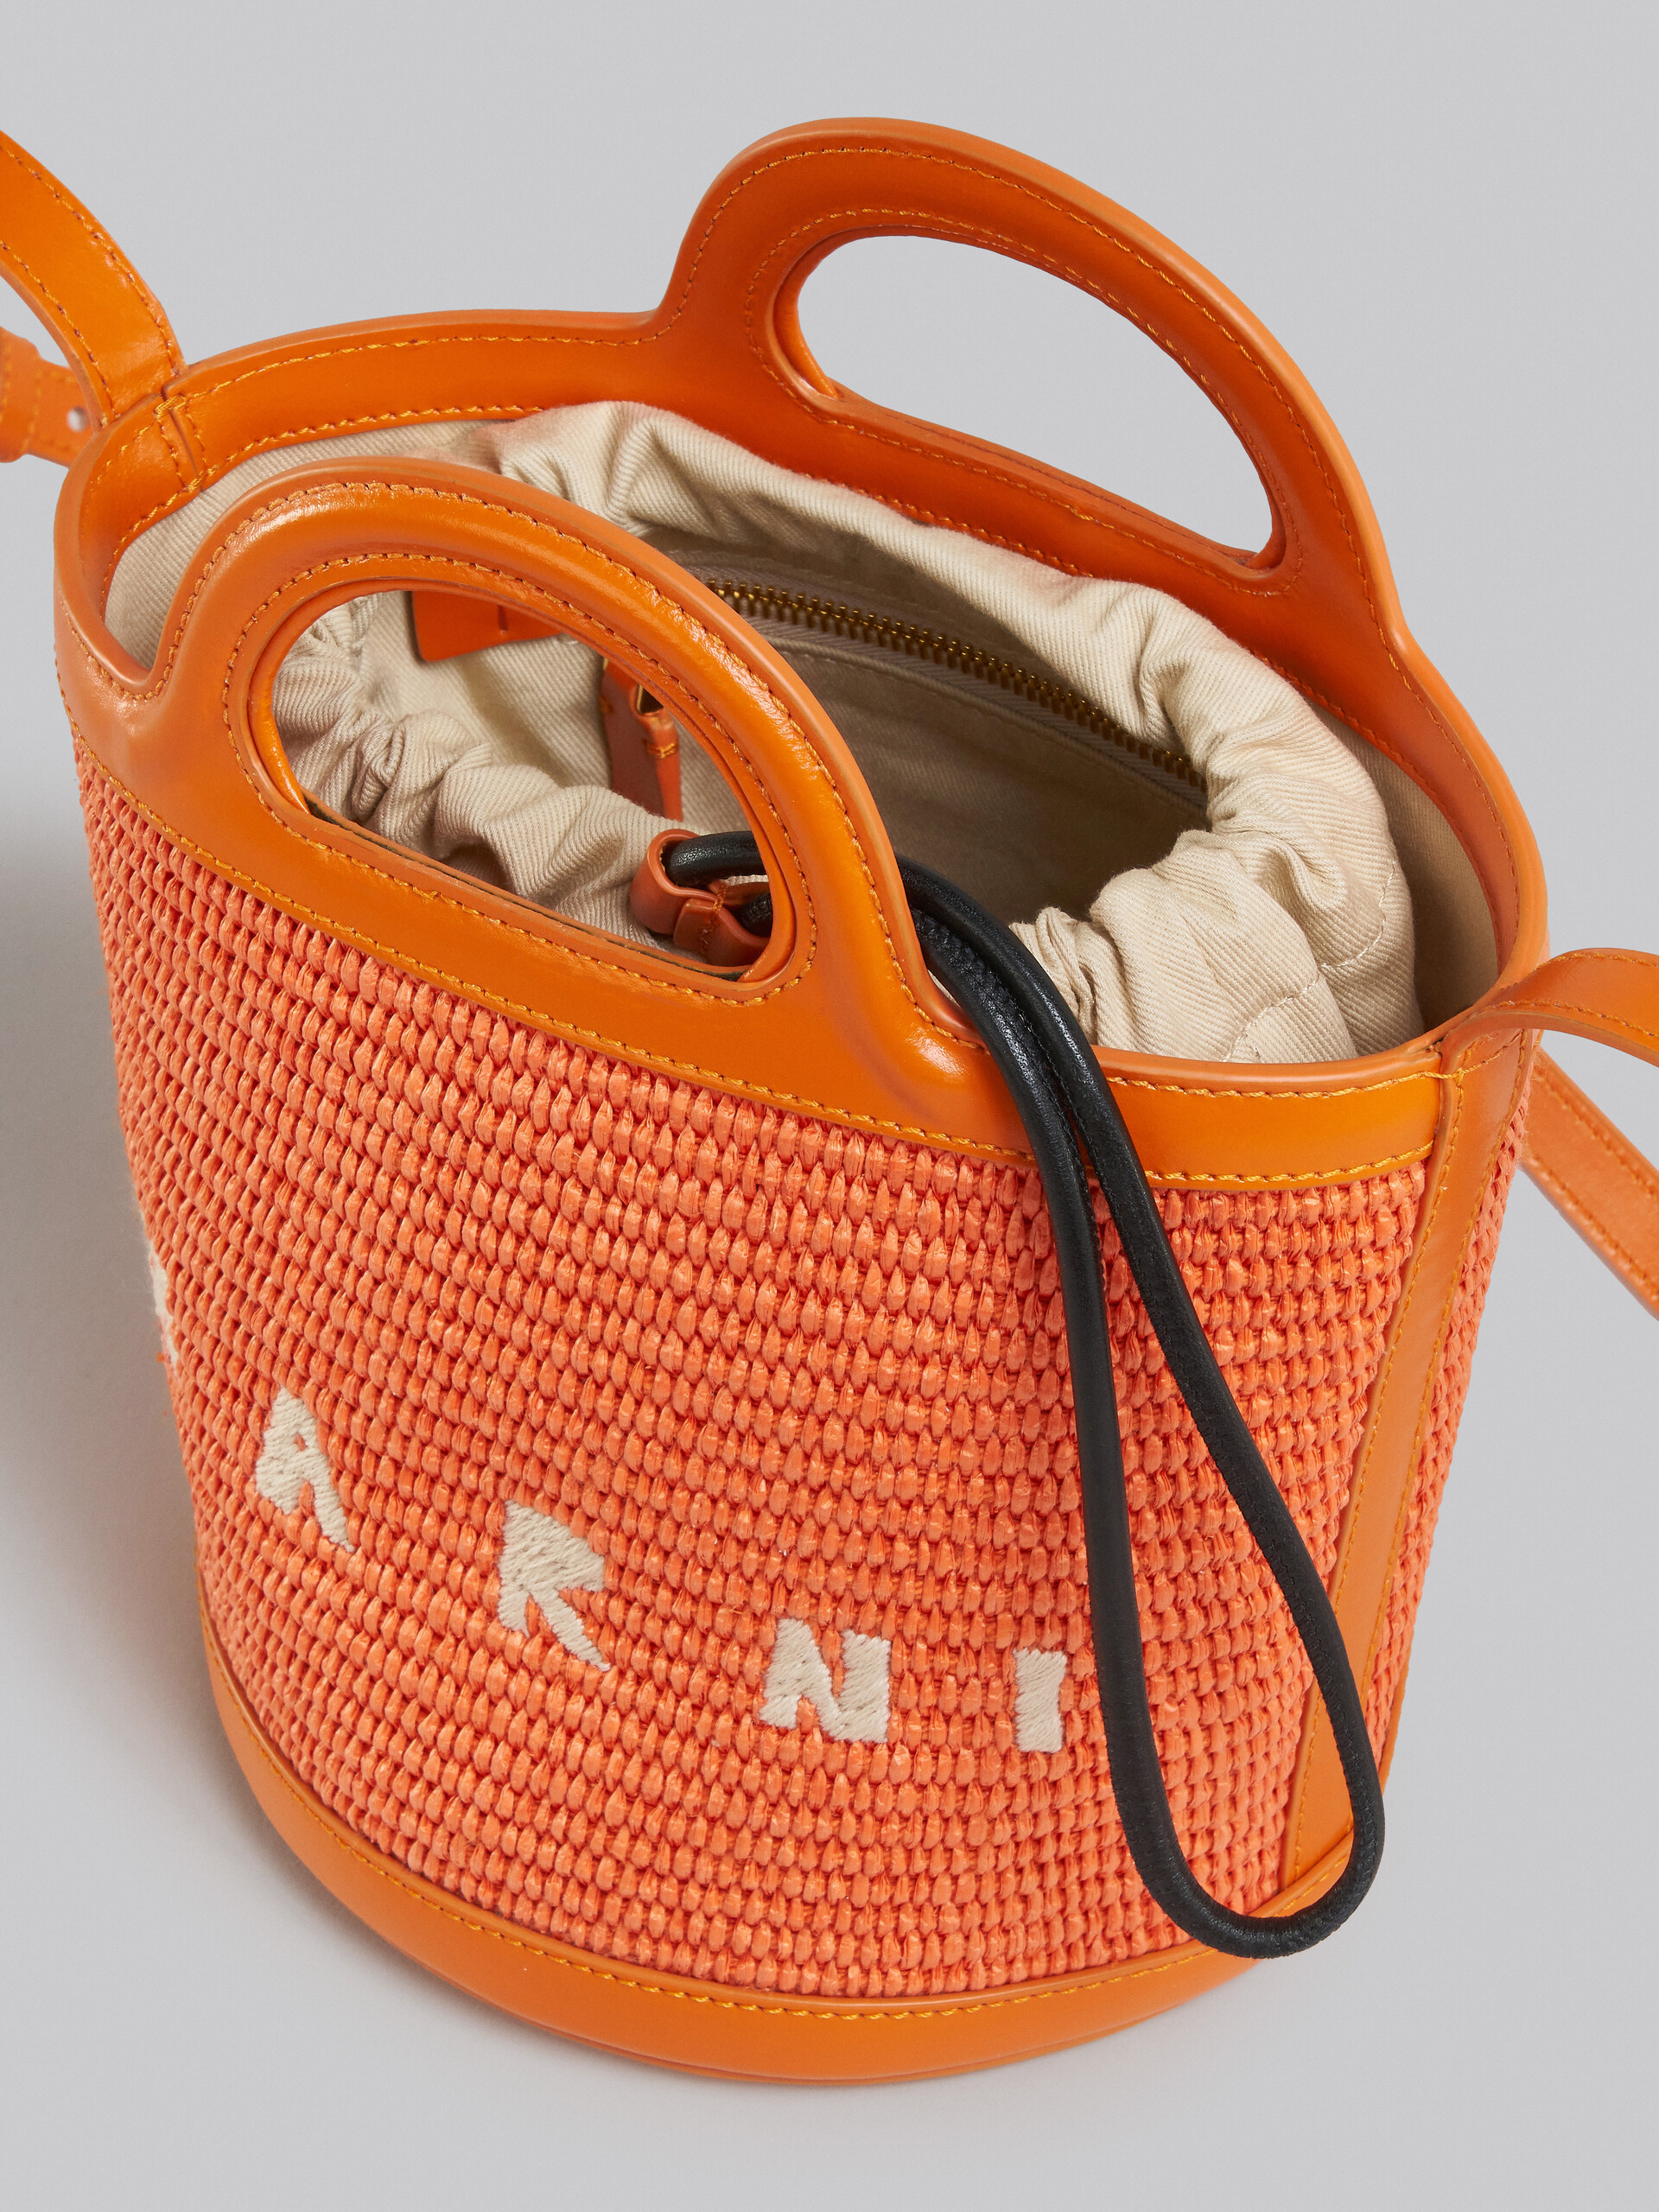 Bolso cubo pequeño Tropicalia de piel naranja y rafia - Bolsos de hombro - Image 4